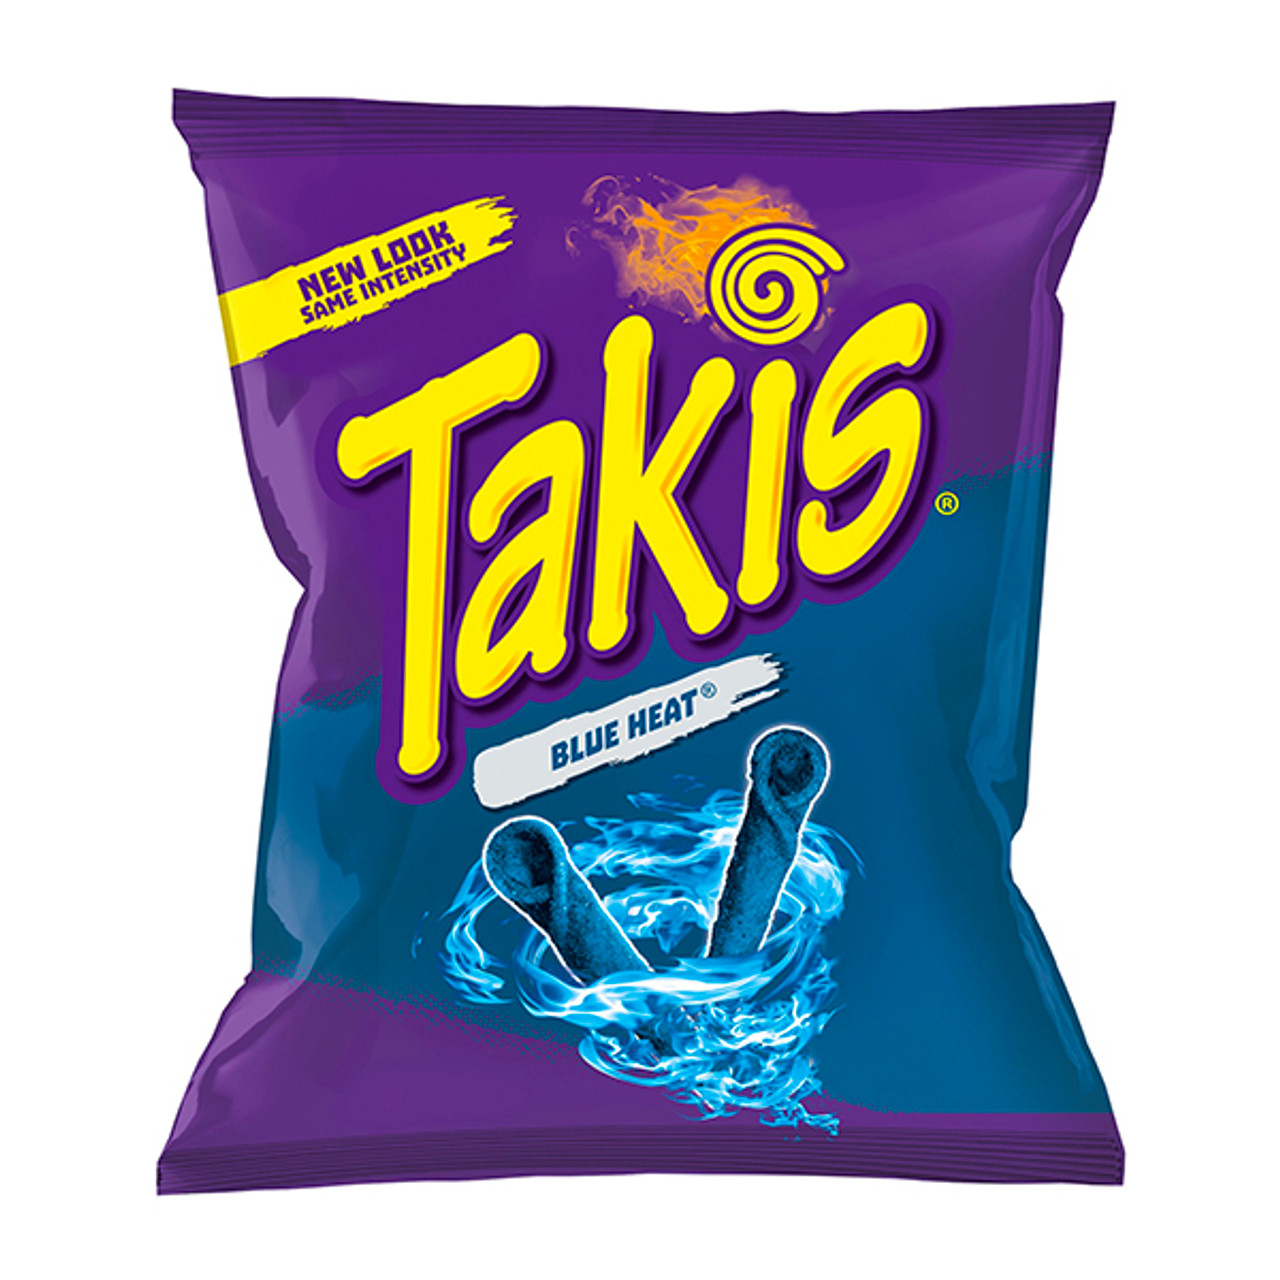 takis bag ingredients